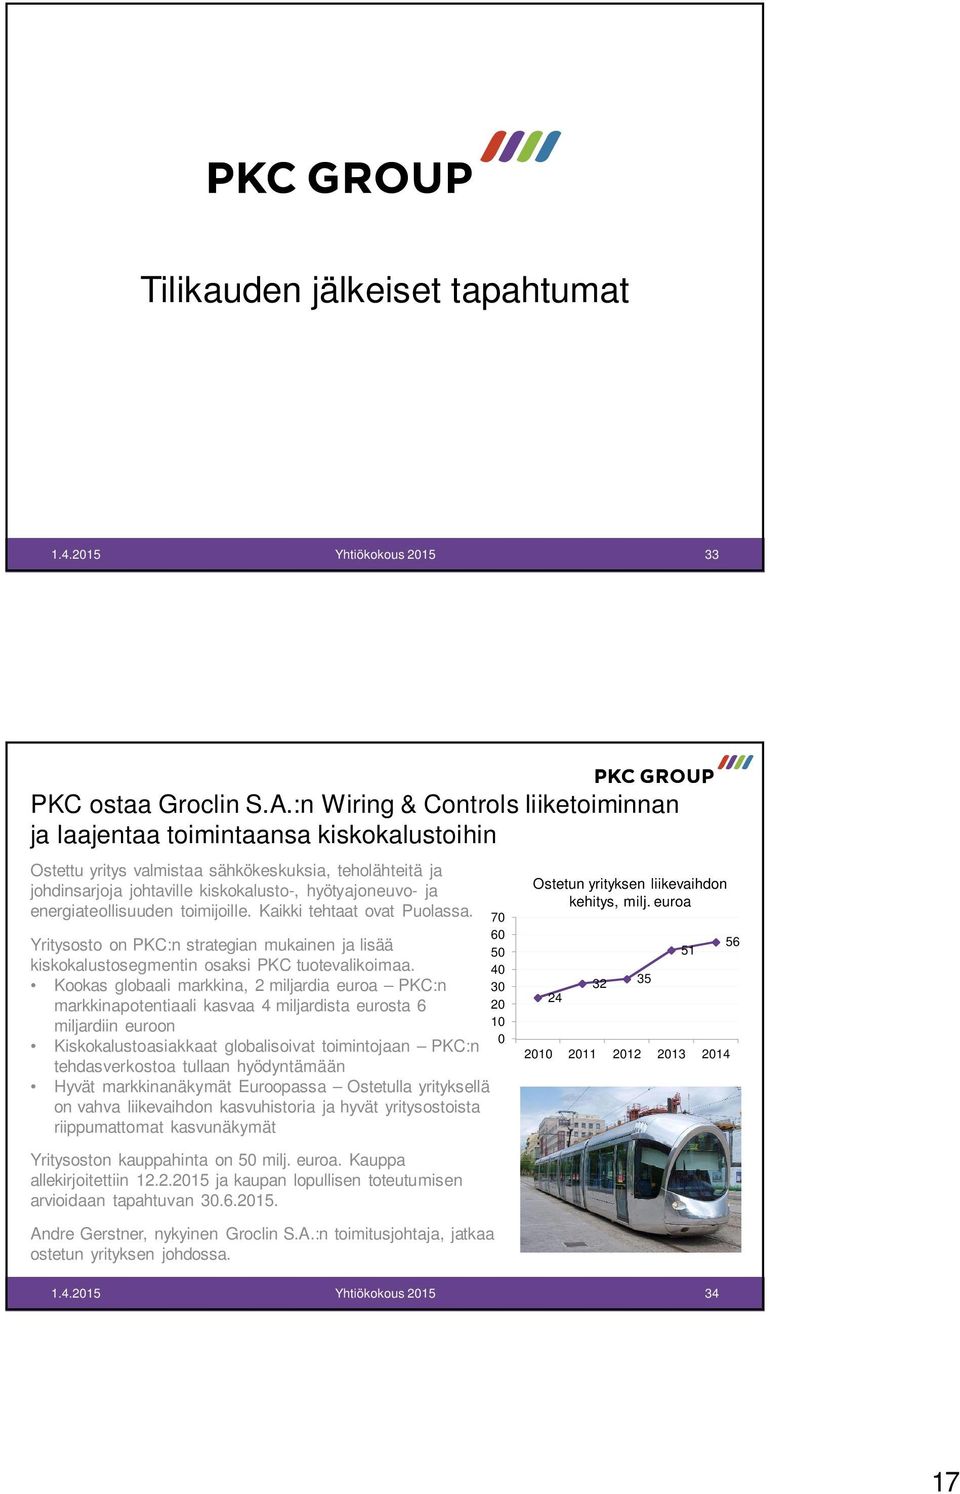 energiateollisuuden toimijoille. Kaikki tehtaat ovat Puolassa. Yritysosto on PKC:n strategian mukainen ja lisää kiskokalustosegmentin osaksi PKC tuotevalikoimaa.